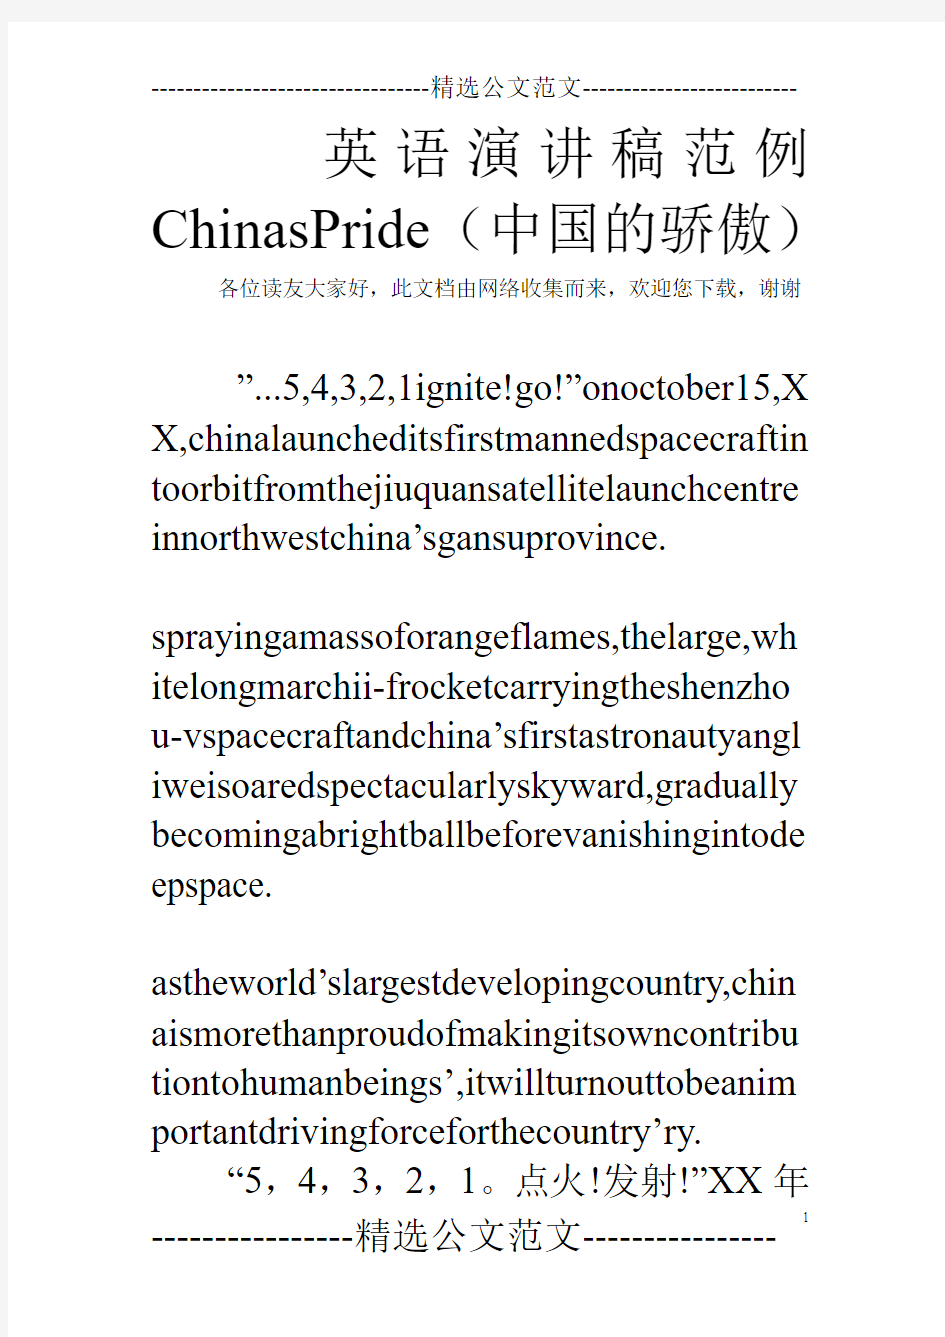 英语演讲稿范例ChinasPride(中国的骄傲)